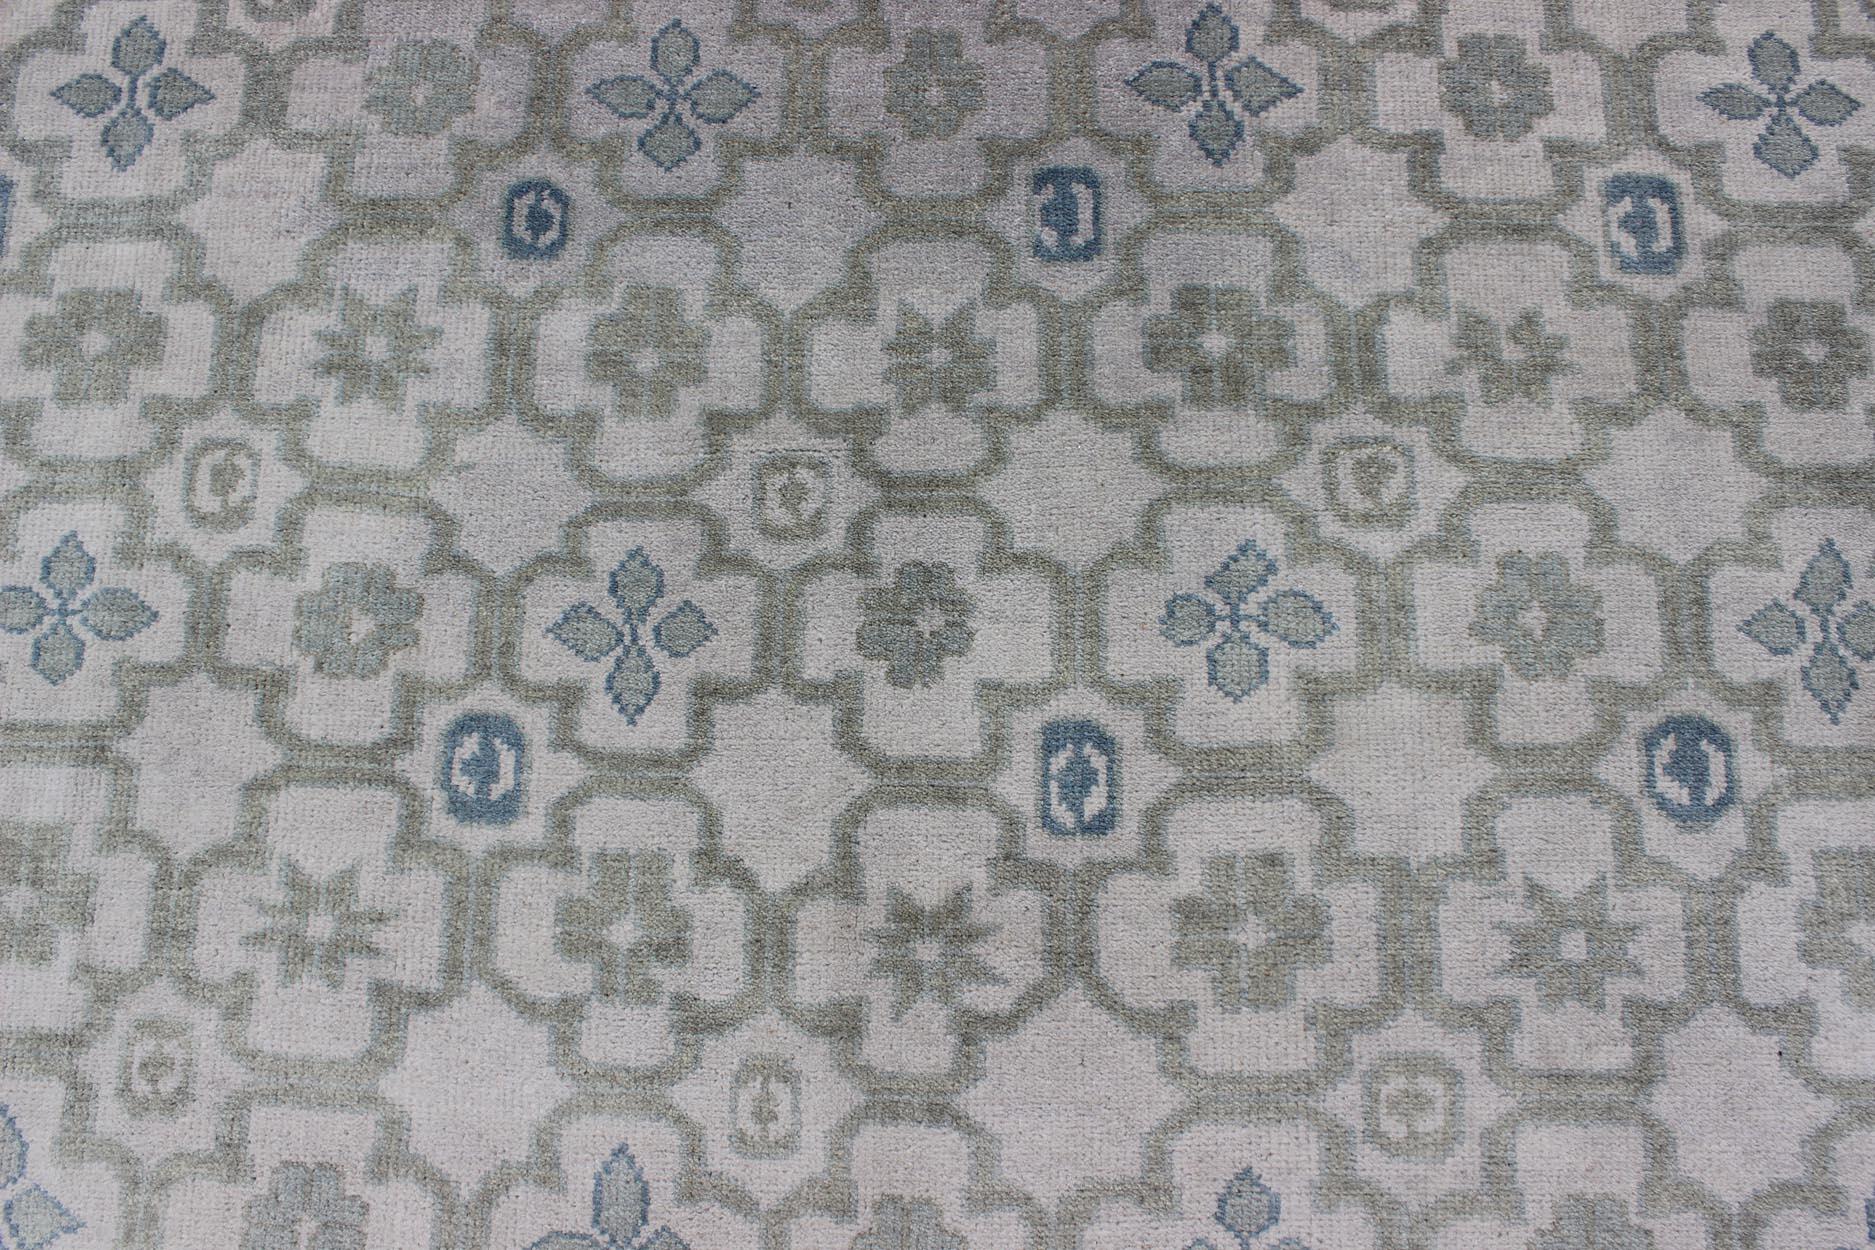 Moderner handgeknüpfter Khotan-Teppich aus Wolle mit subgeometrischem Allover-Design. 
Maße: 8'0 x 10'0.
Dieser moderne Khotan-Teppich ist aus Wolle handgeknüpft und zeigt ein subgeometrisches Allover-Muster in Blau-, Grün- und Cremetönen. Eine